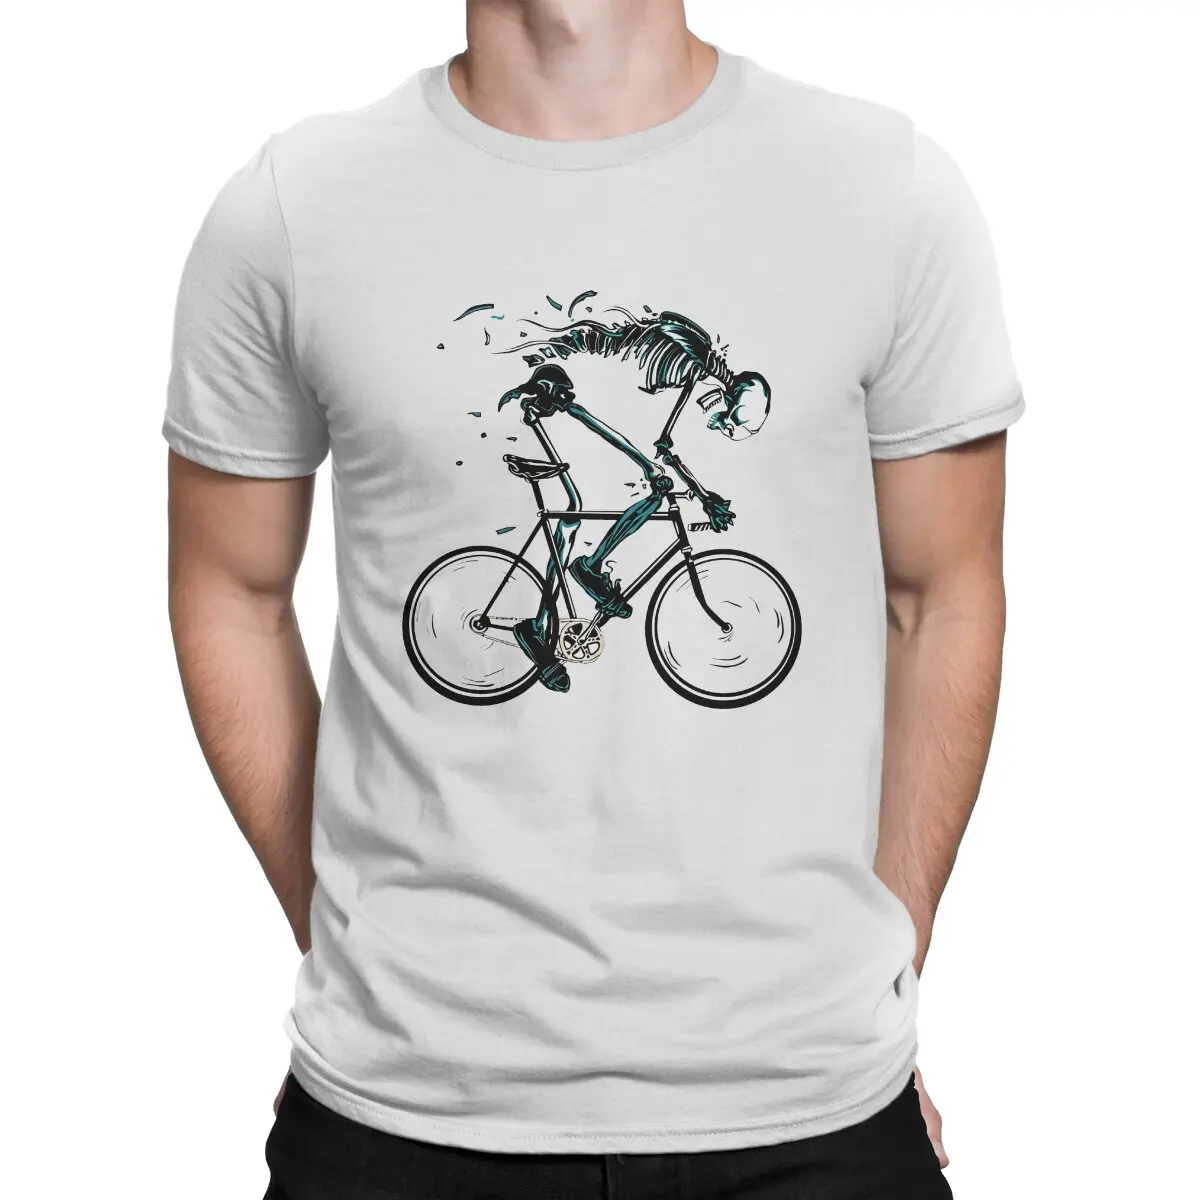 

Футболка мужская из чистого хлопка, крутая тенниска с принтом скелета езды на велосипеде до смерти, BMX Racing